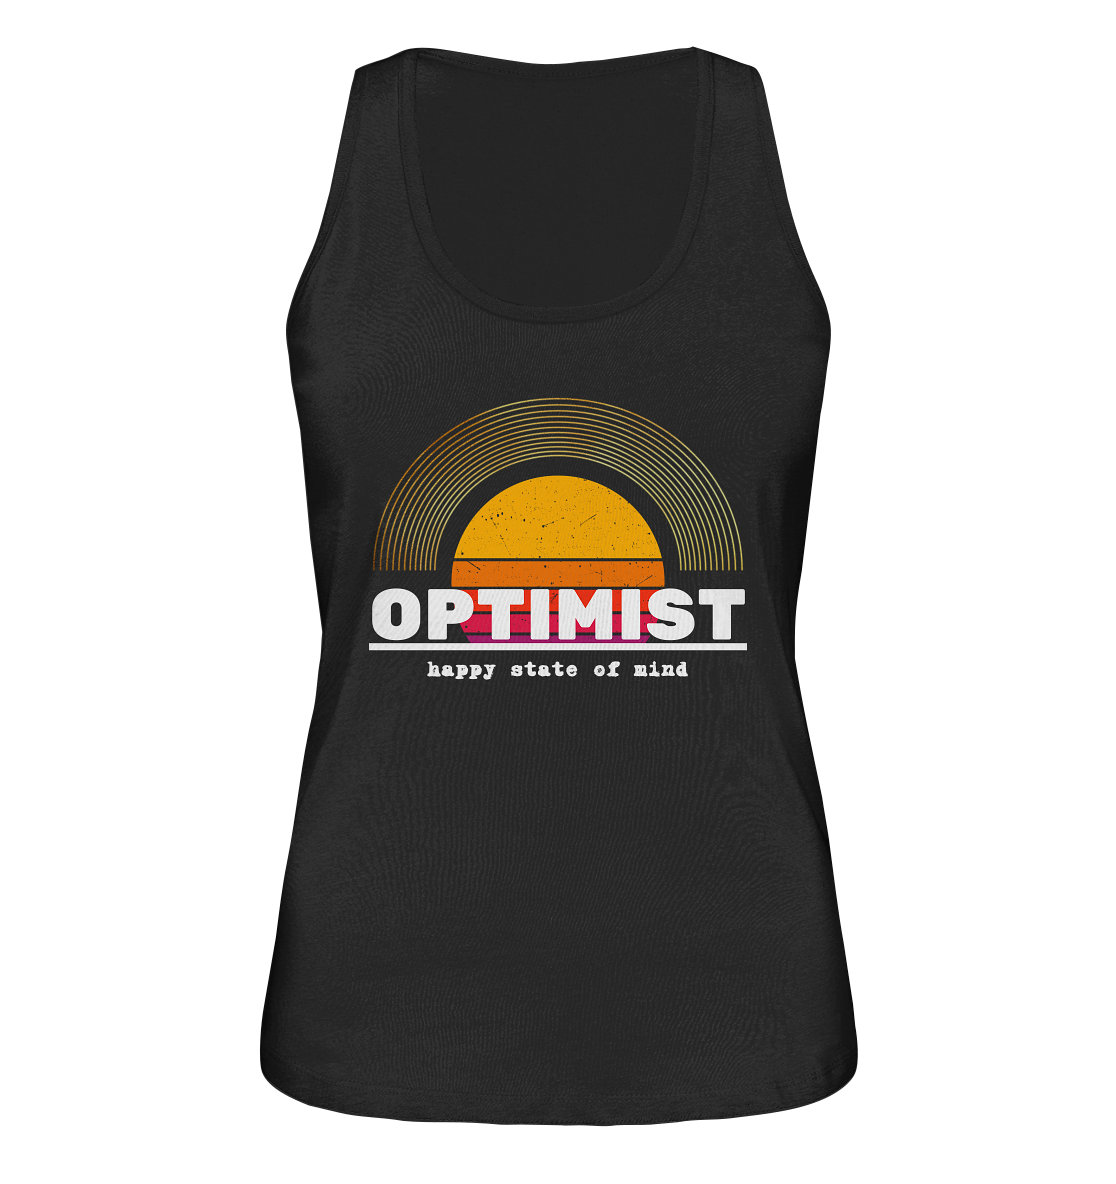 Optimist | Premium Organic Ladies Tank Top